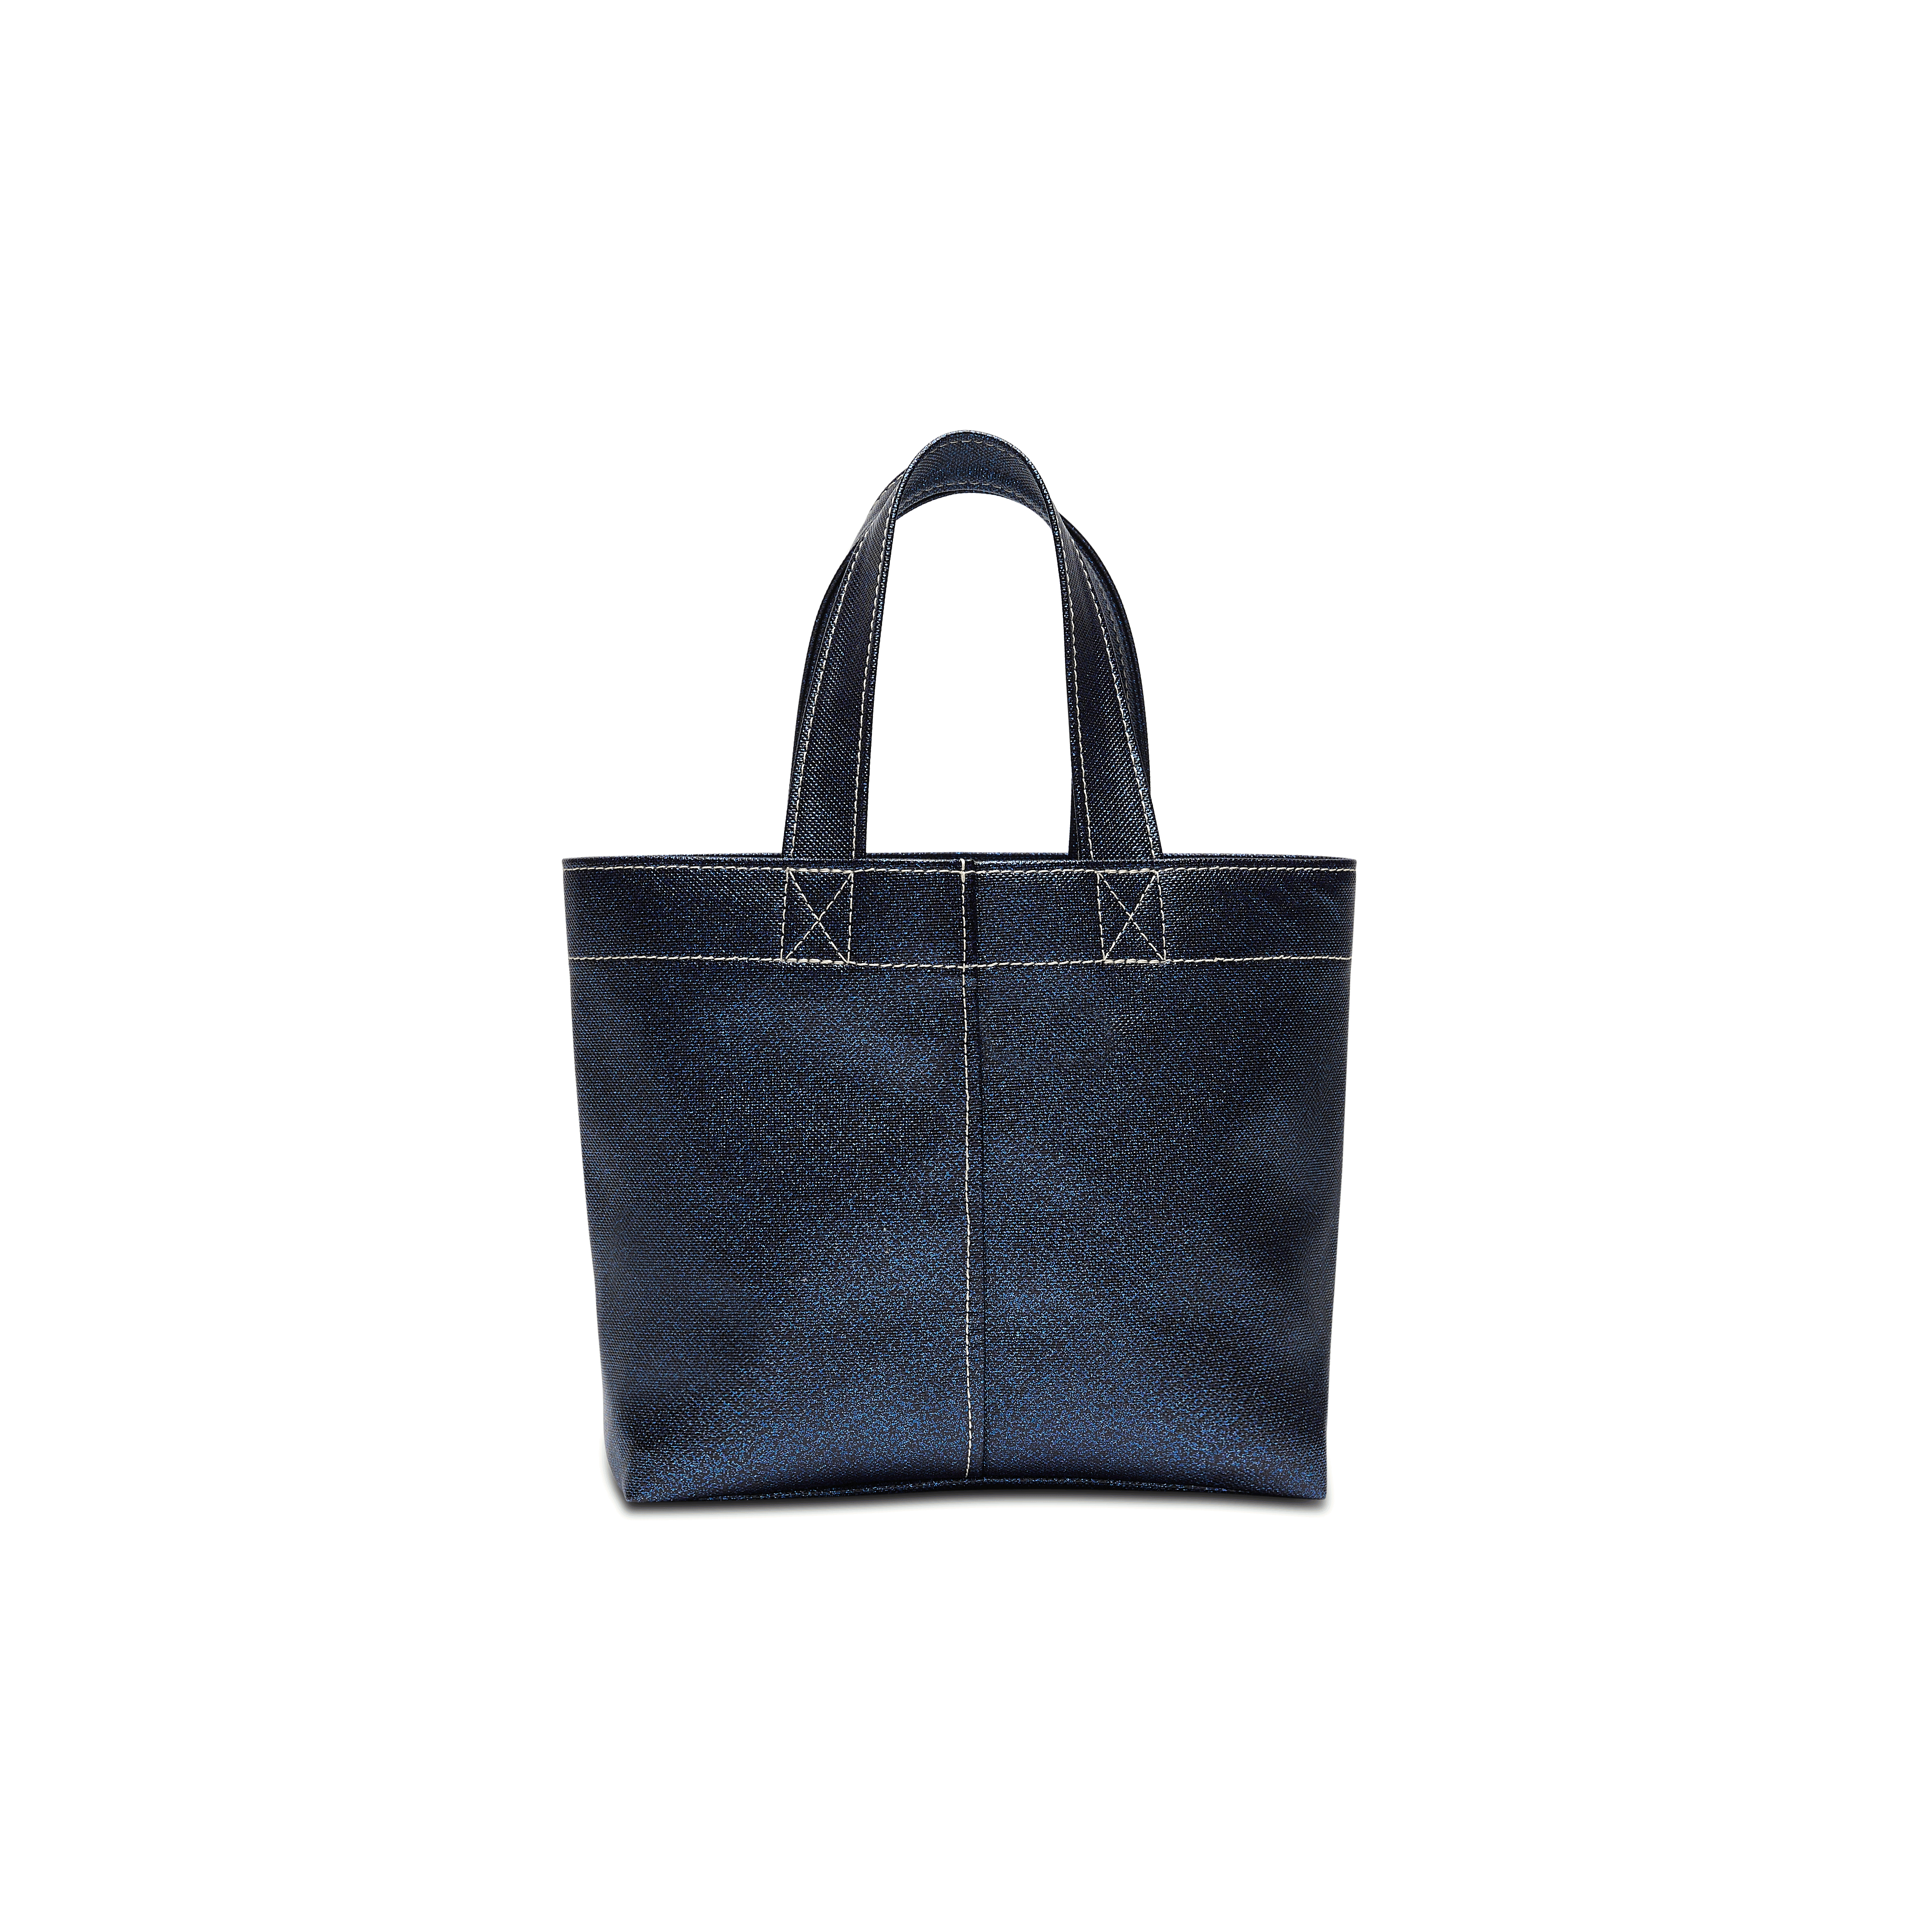 Starlight leather bag Miu Miu Black in Leather - 27725066